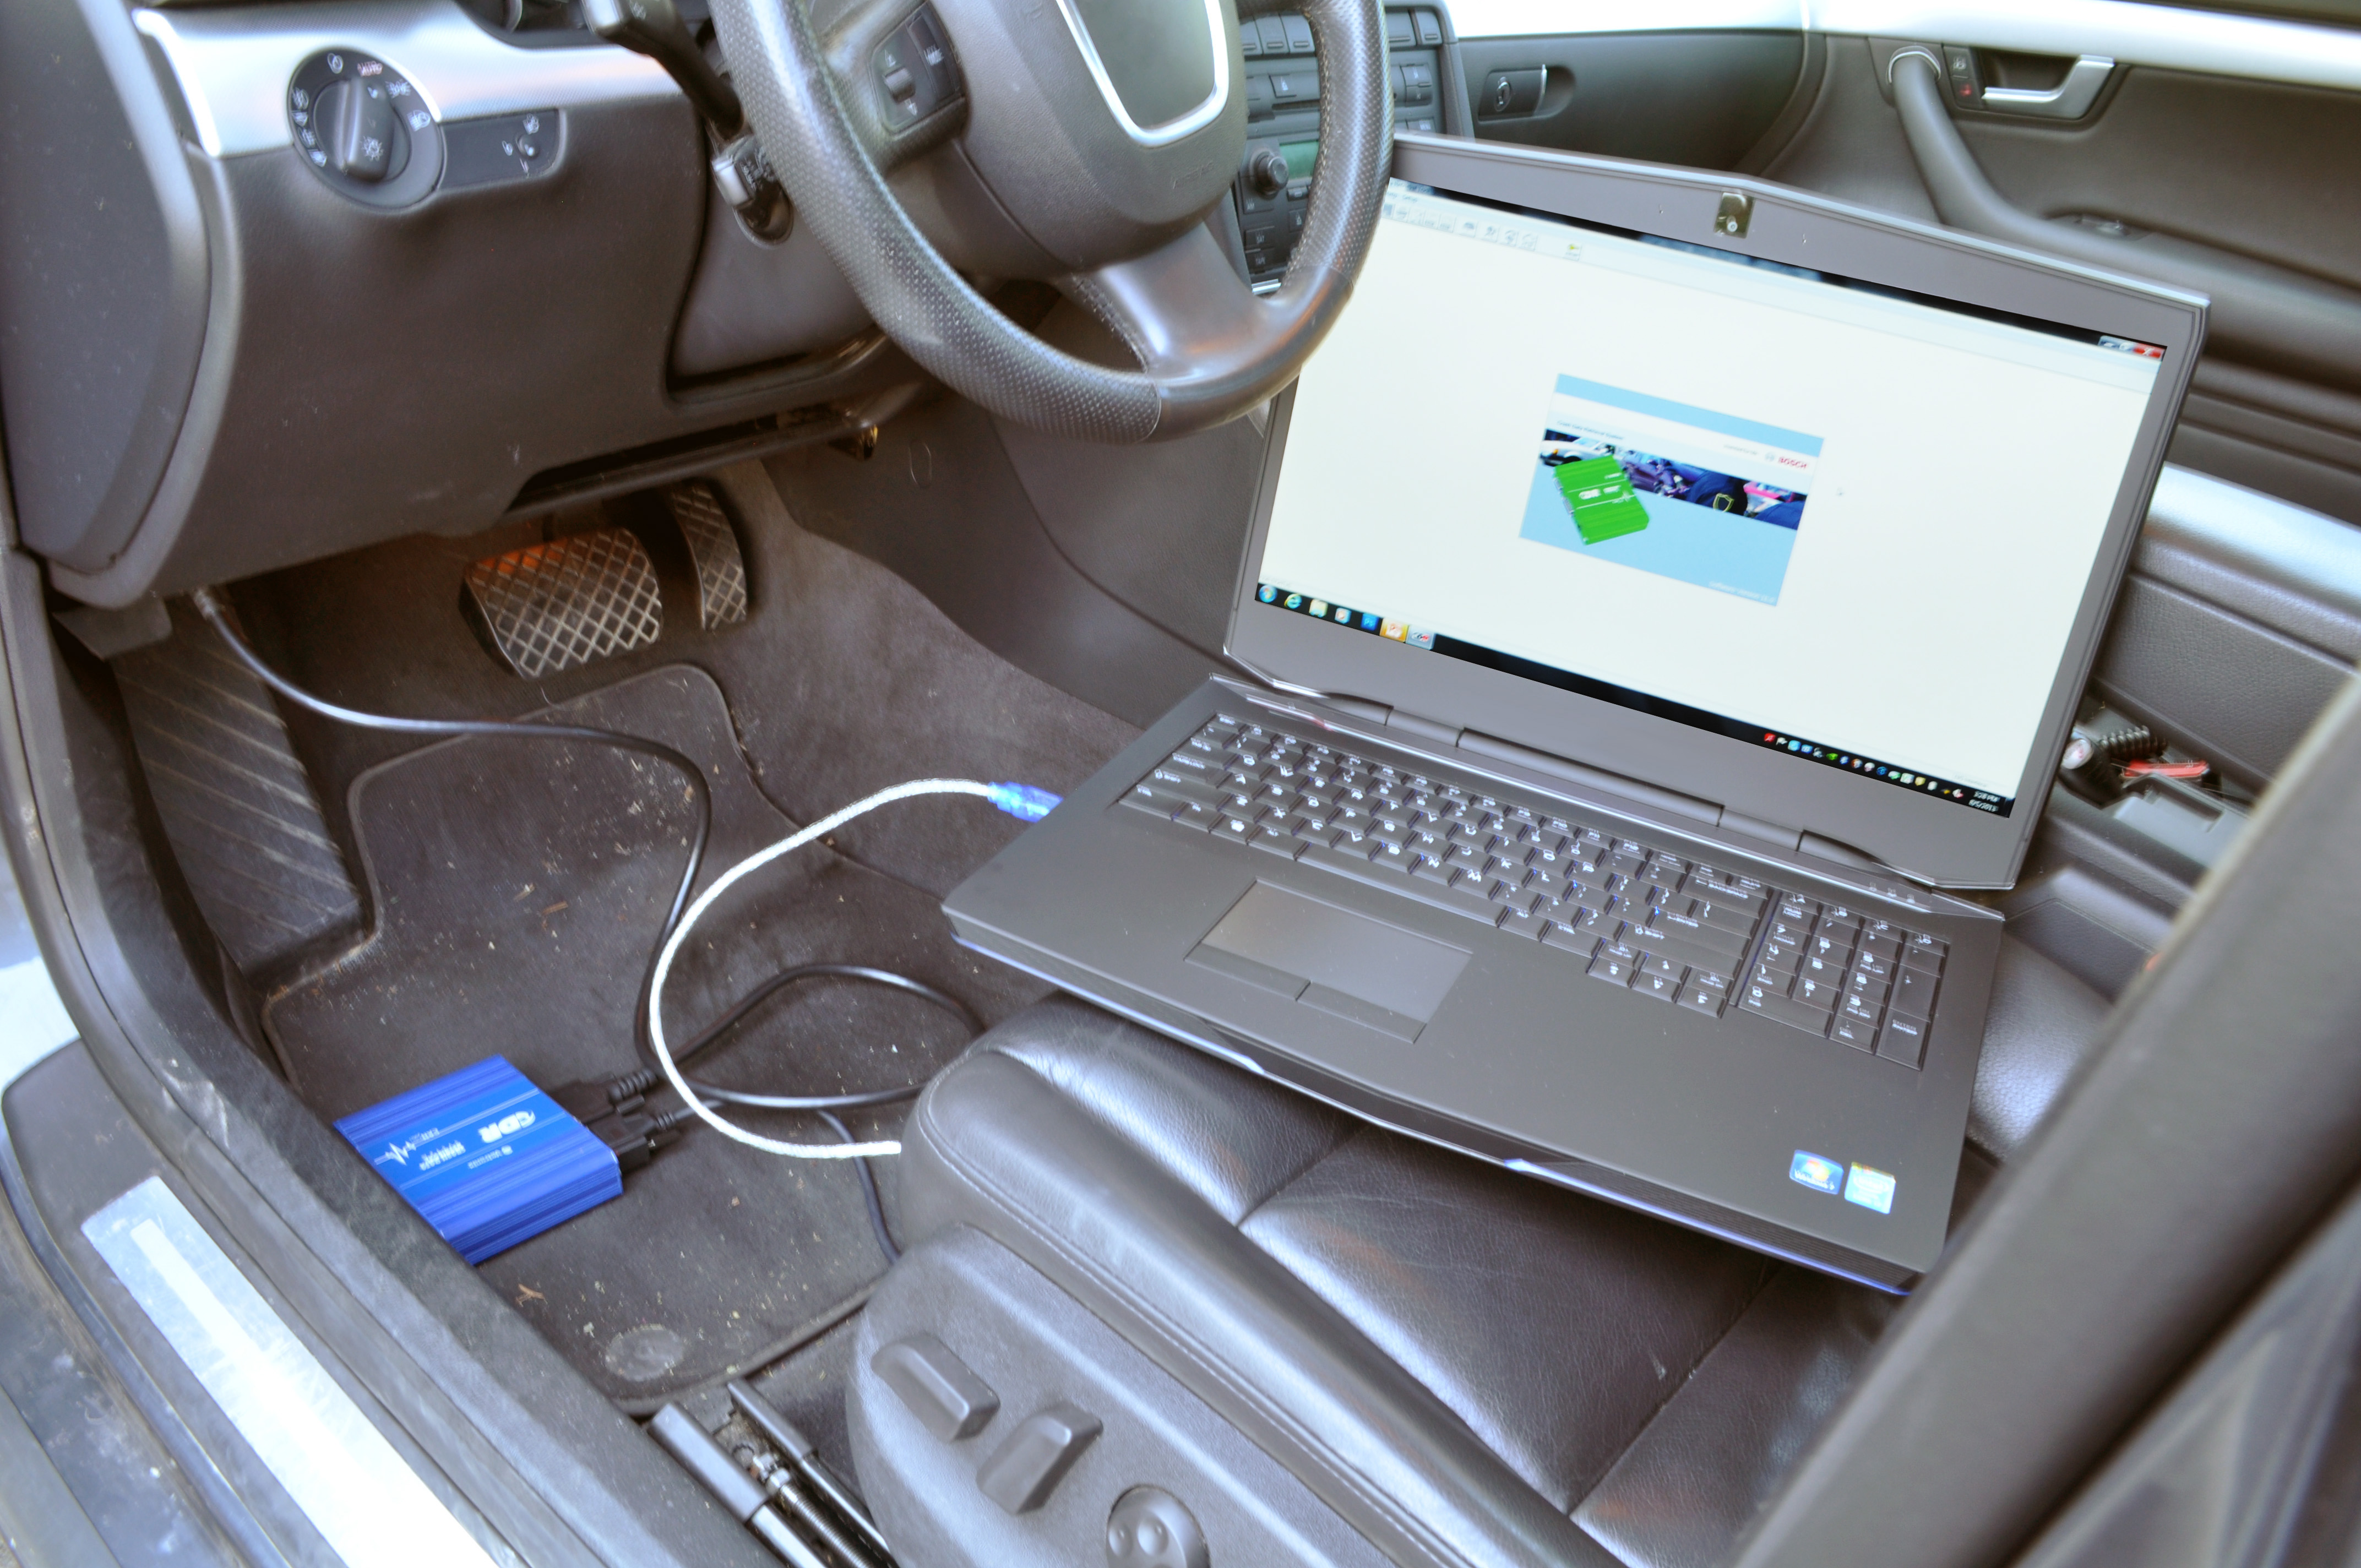 A laptop sitting on a car sear